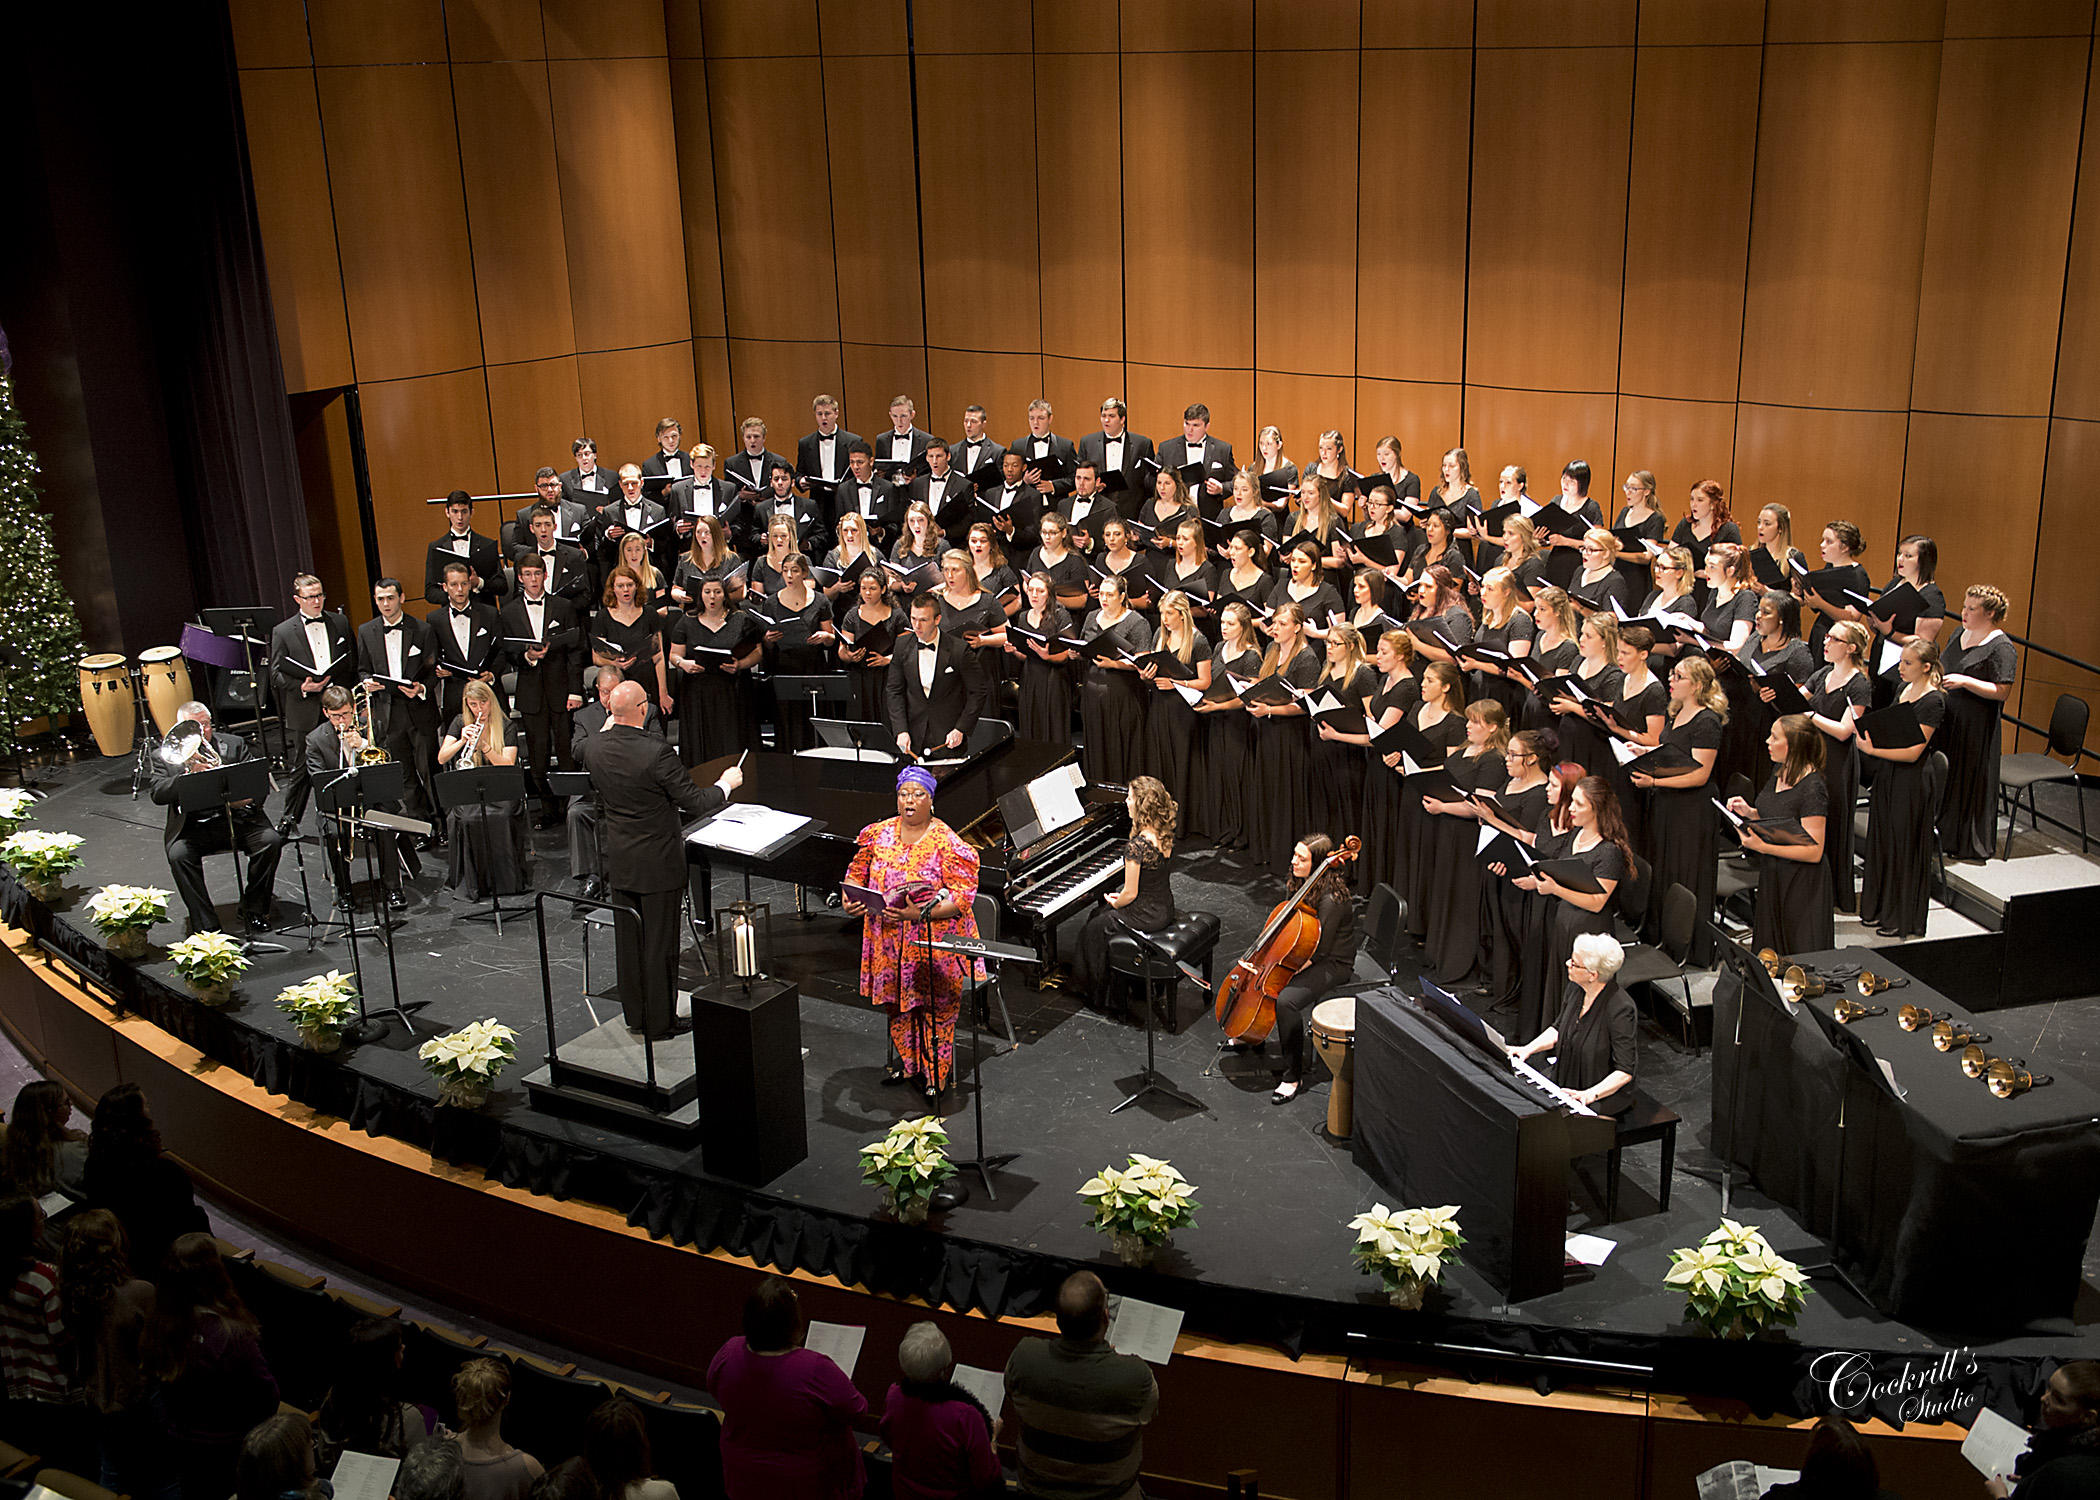 Mount Union Concert Choir